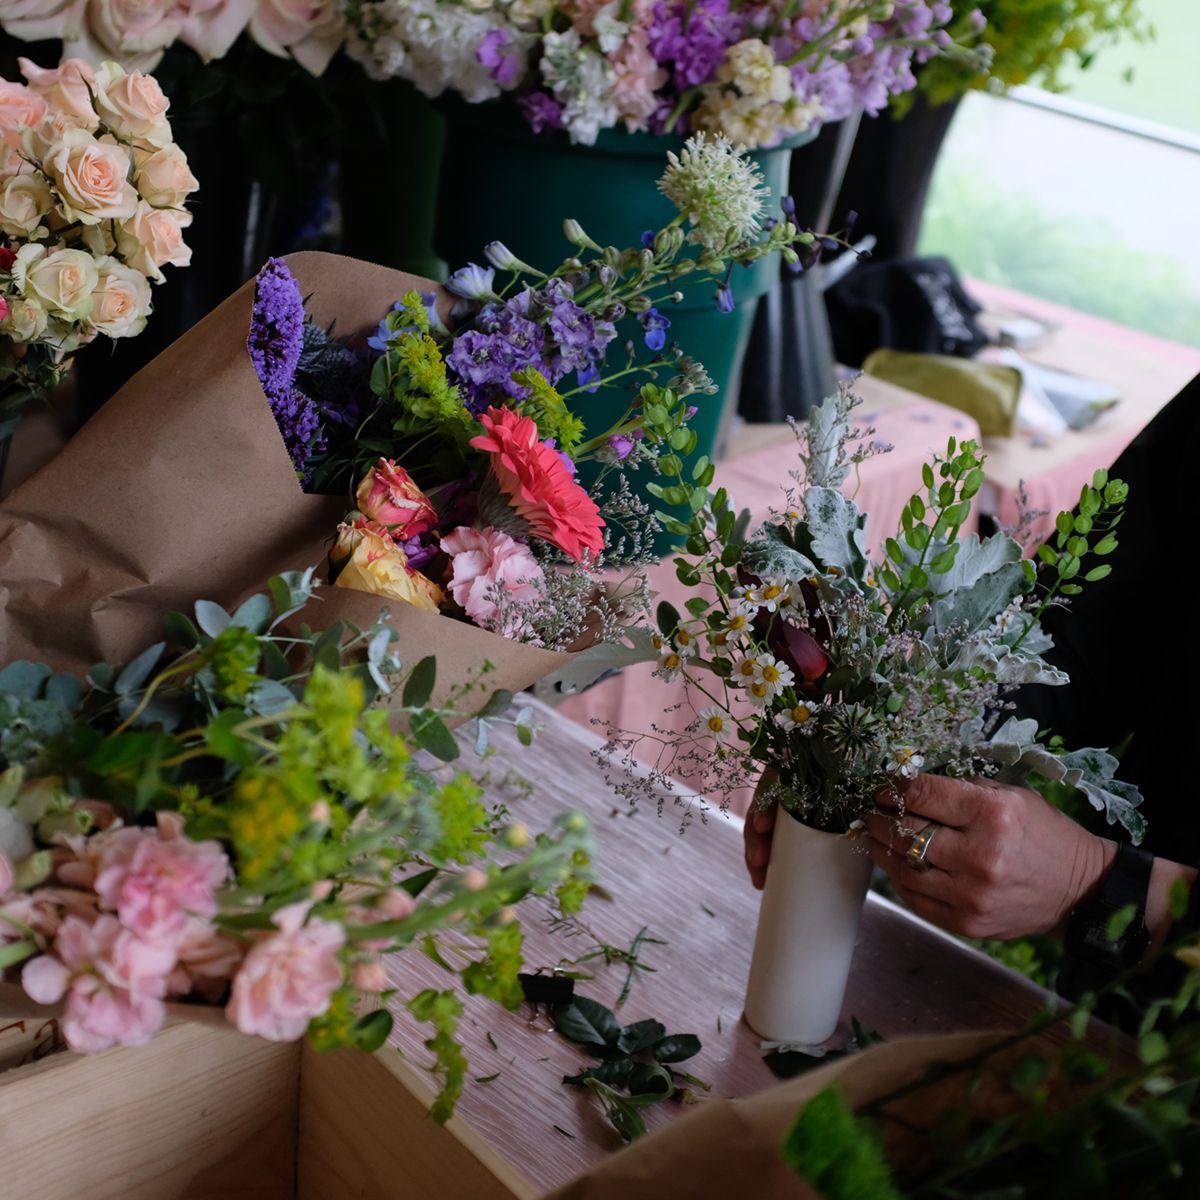 pop-up flower market, rebecca arranging greens in a vase